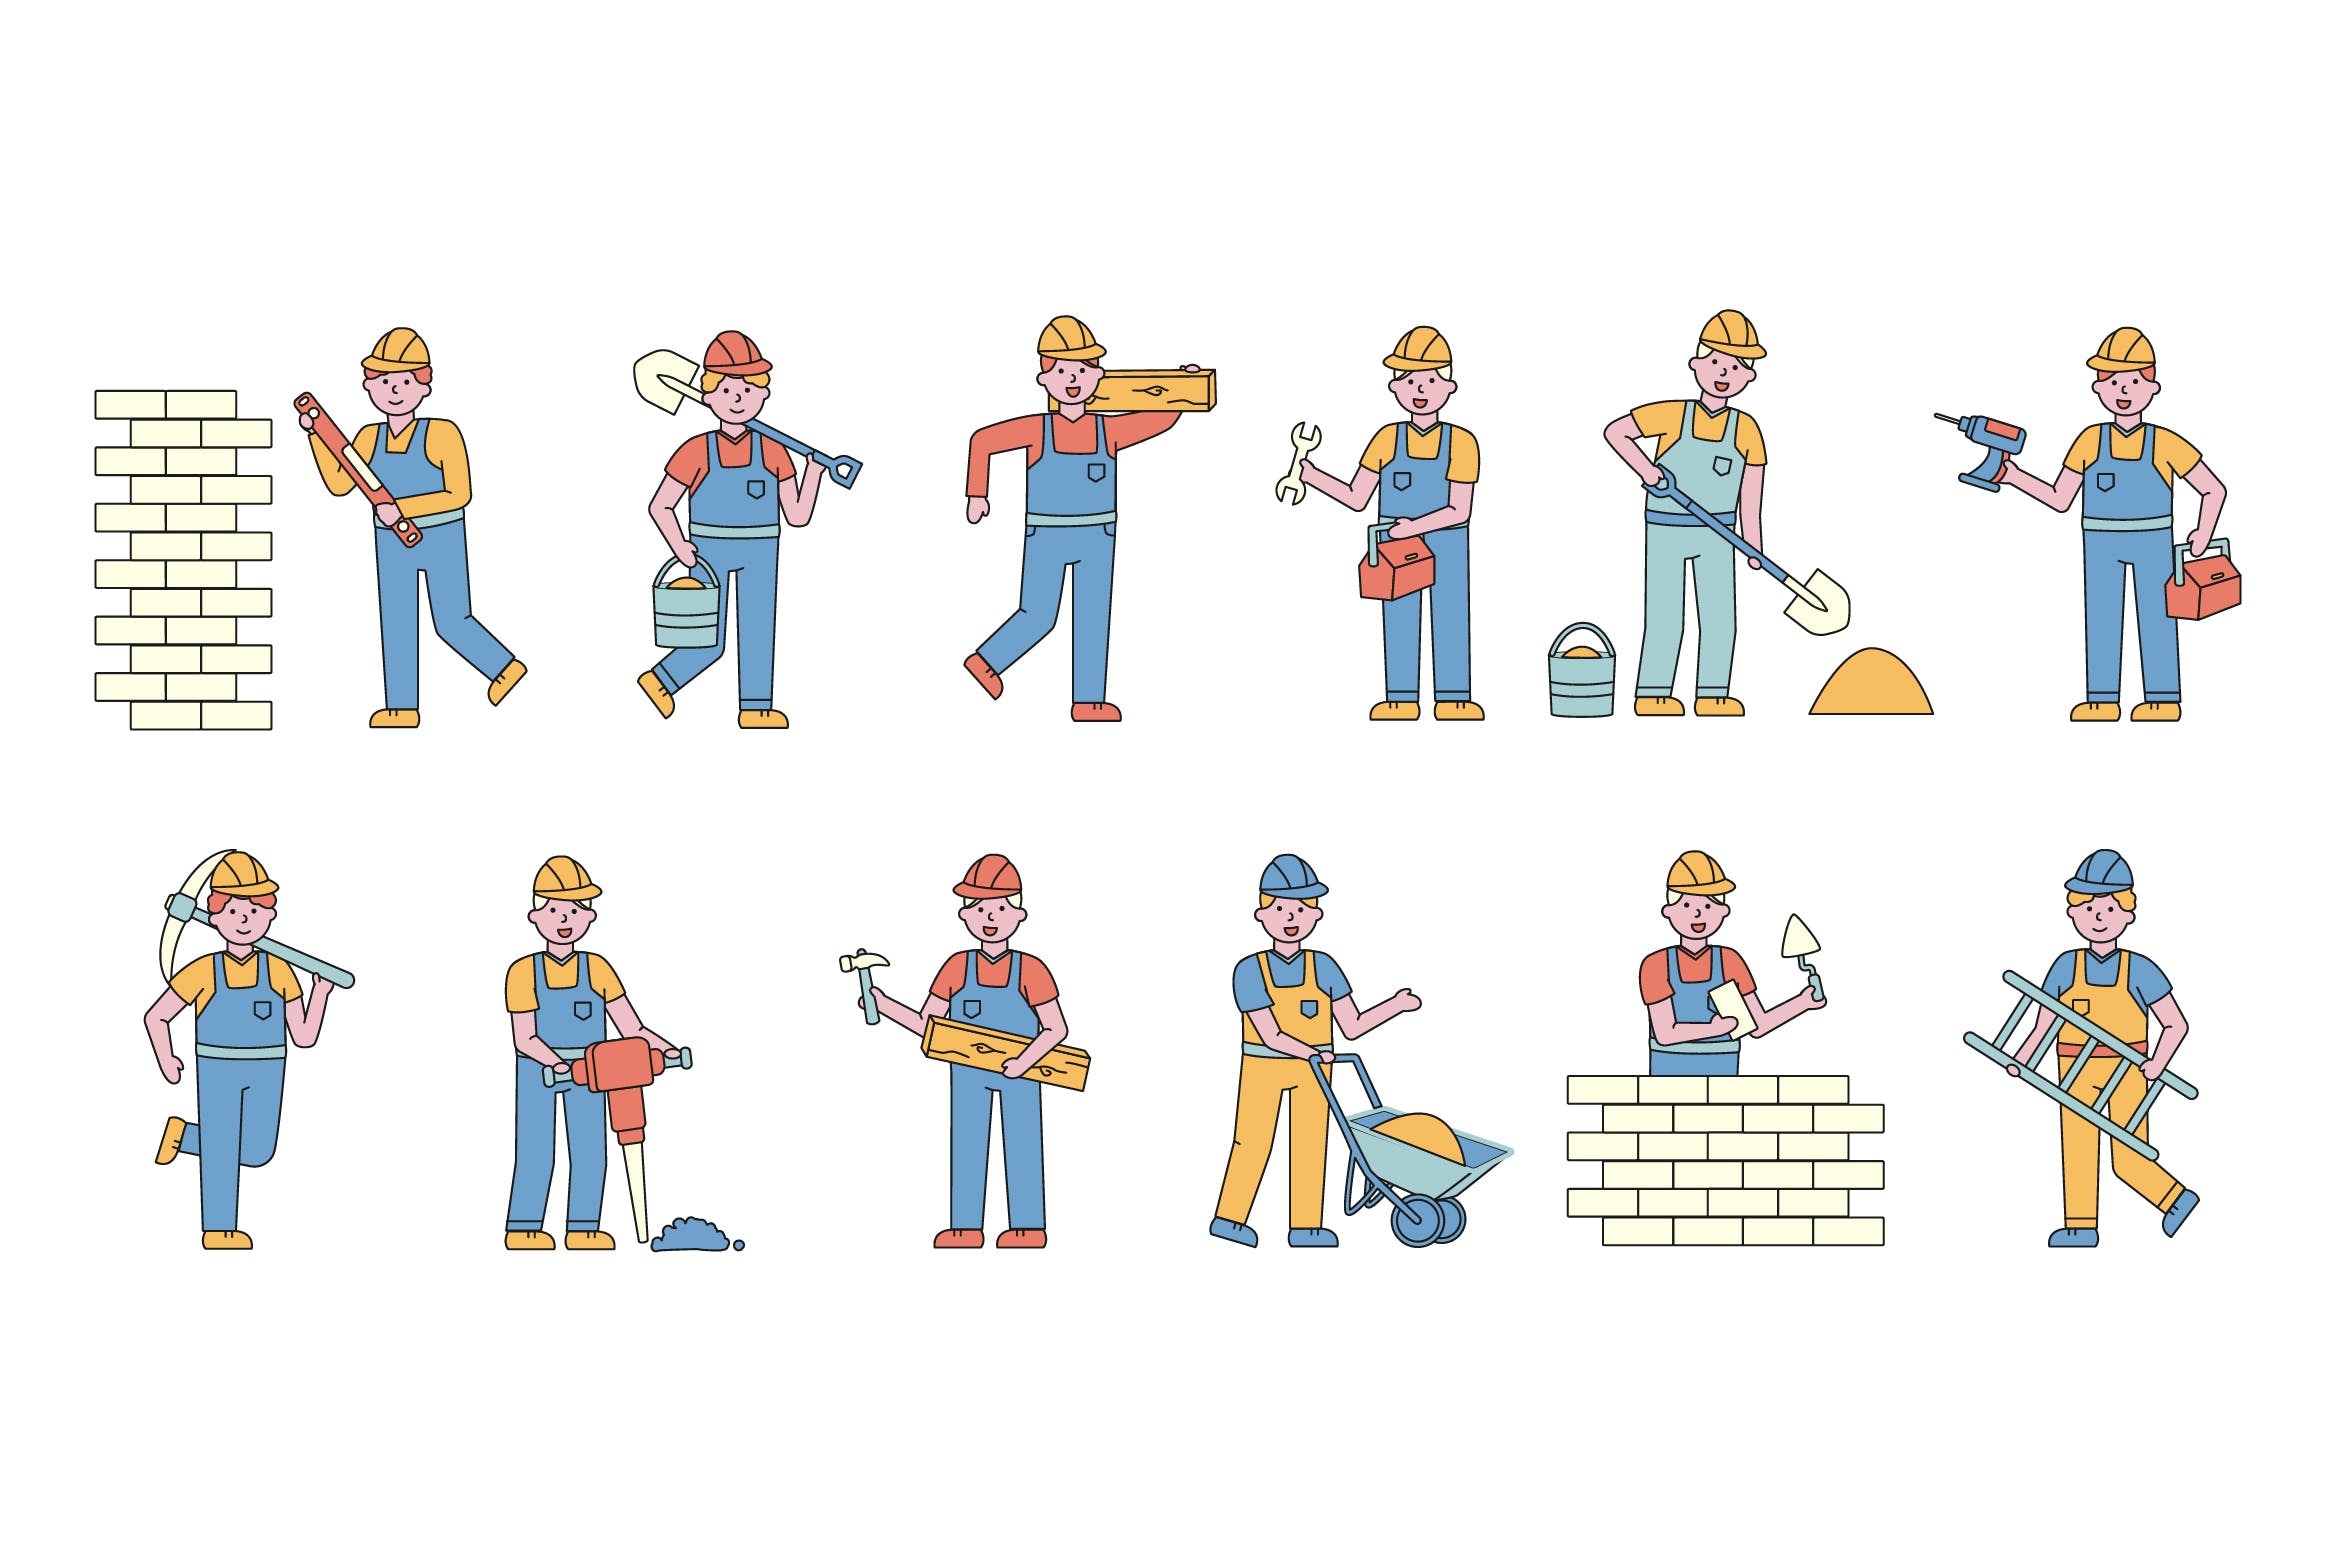 建筑工人人物形象线条艺术矢量插画素材库精选素材 Builders Lineart People Character Collection插图